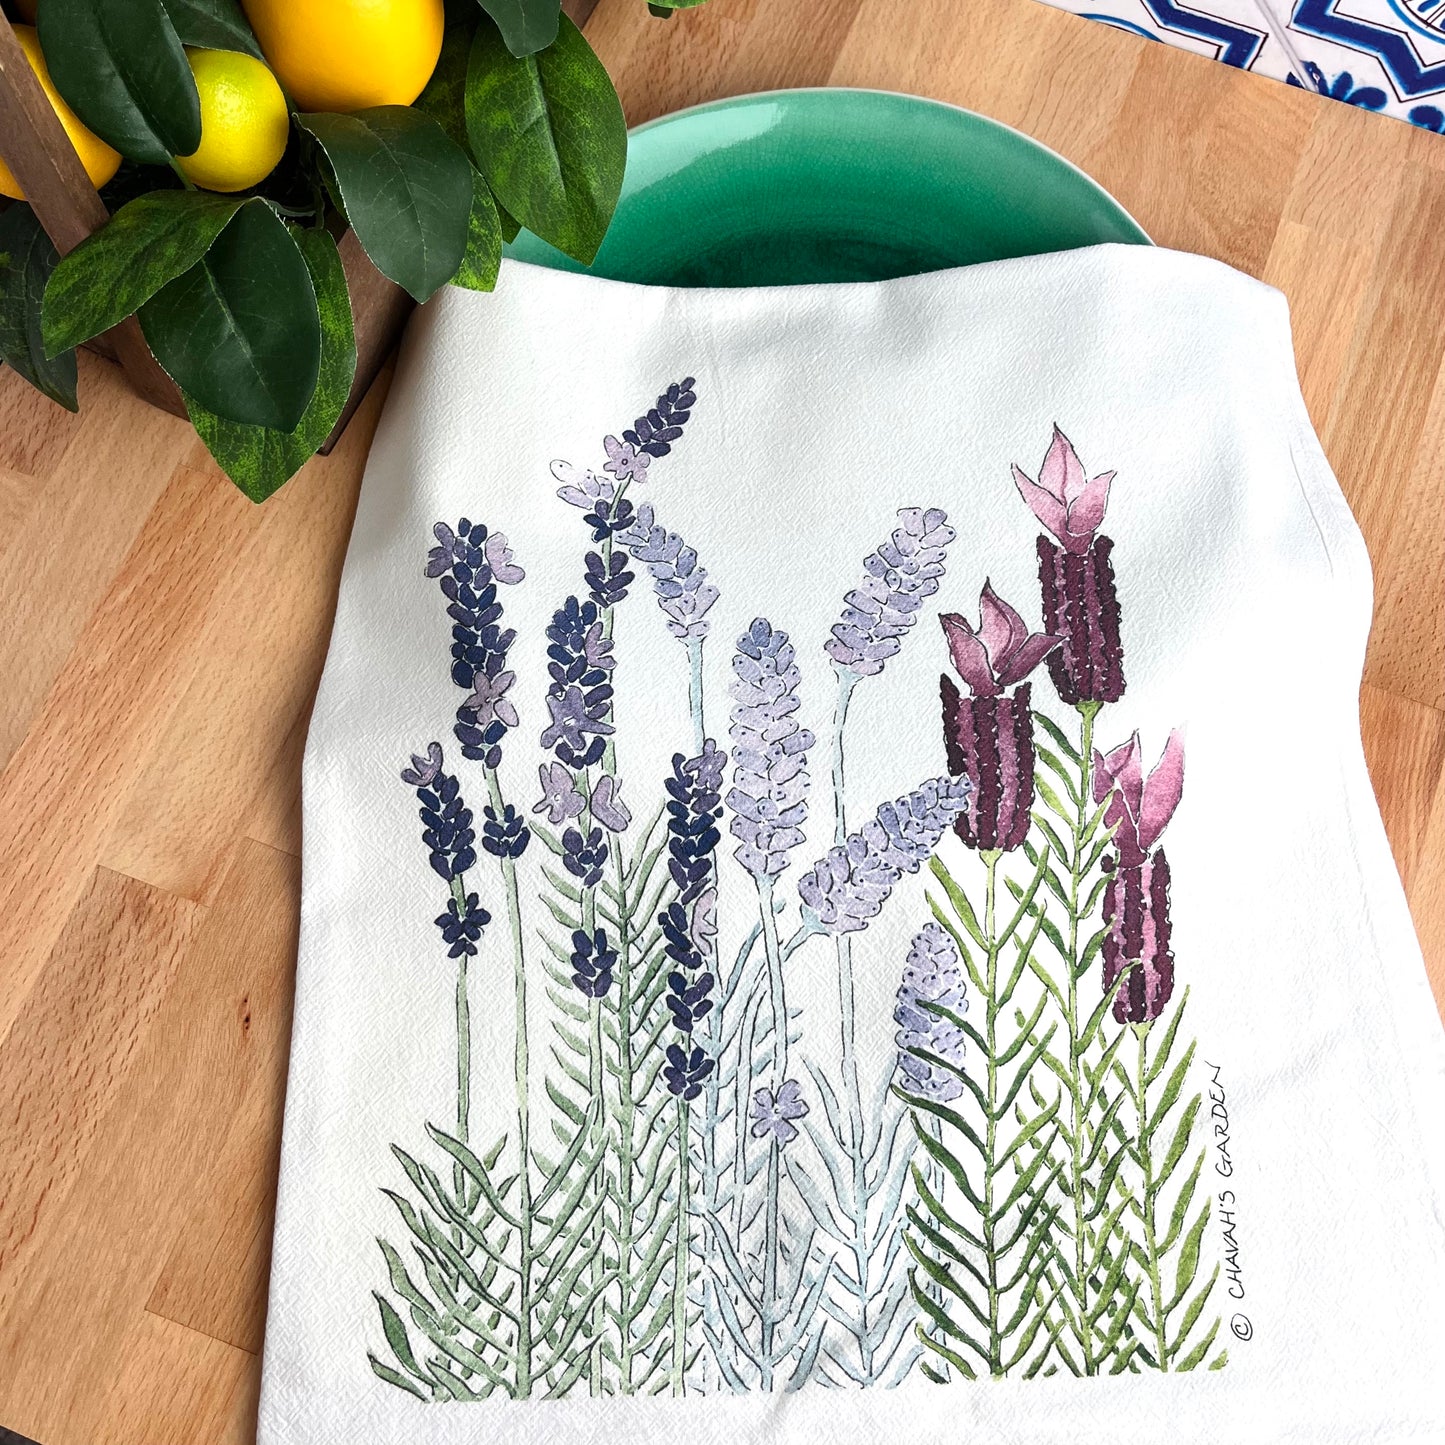 Flour Sack Tea Towels, Lavender, Garden Theme